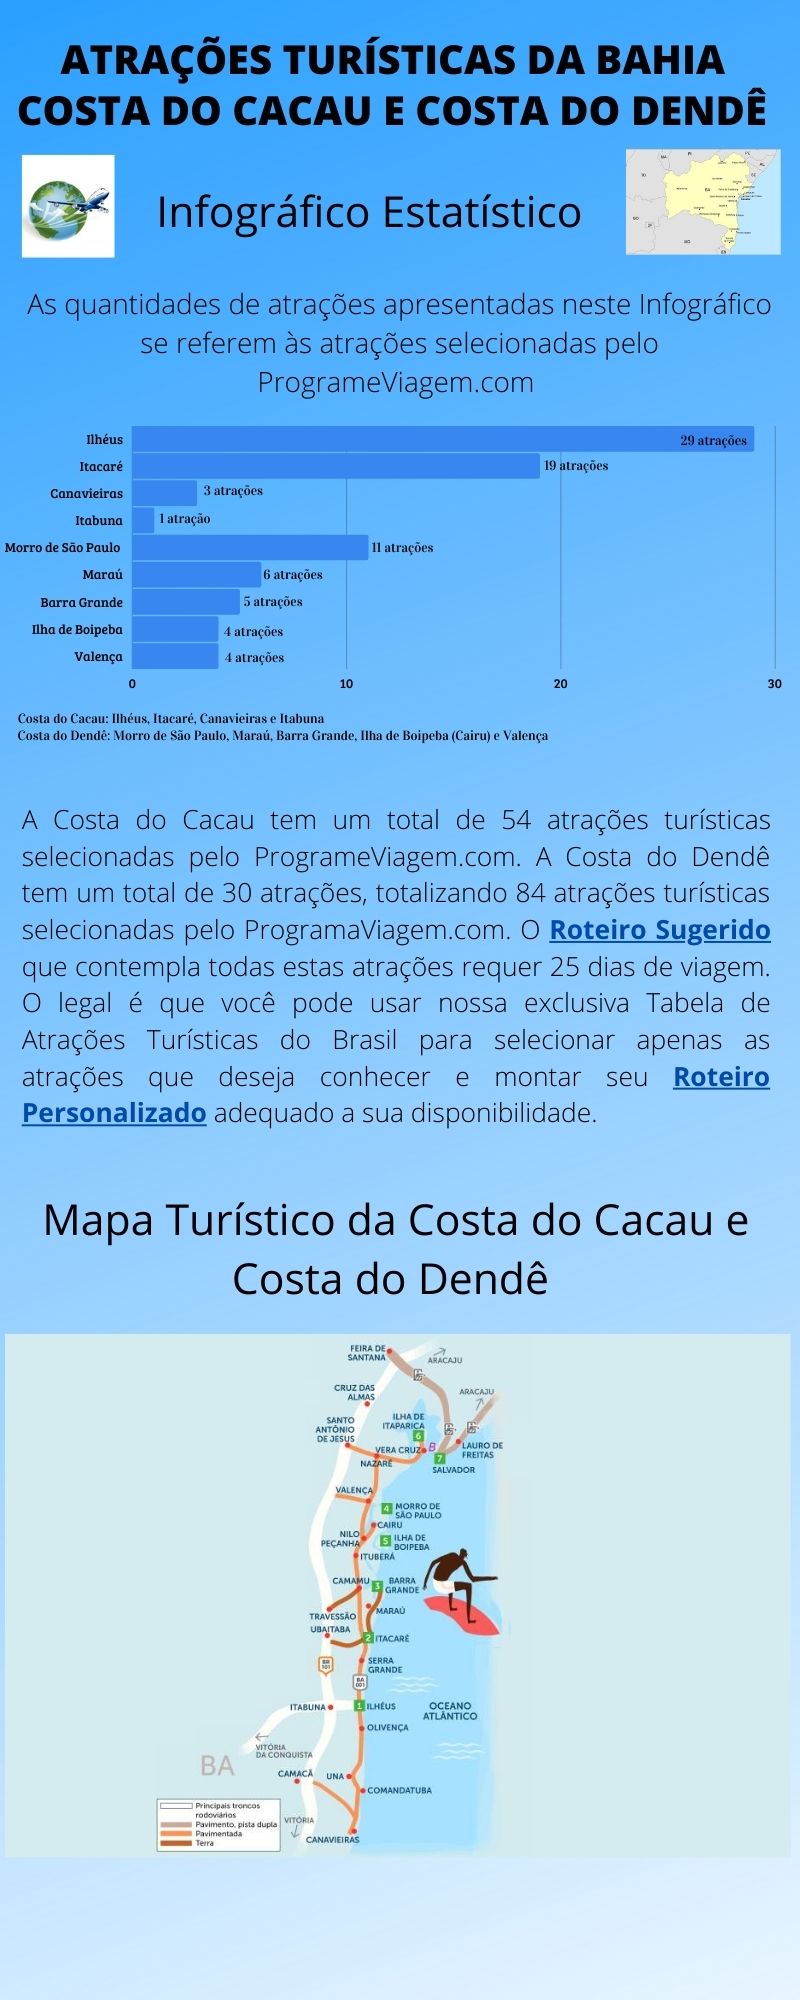 Infográfico Atrações Turísticas da Bahia (Costa do Cacau e Costa do Dendê)1